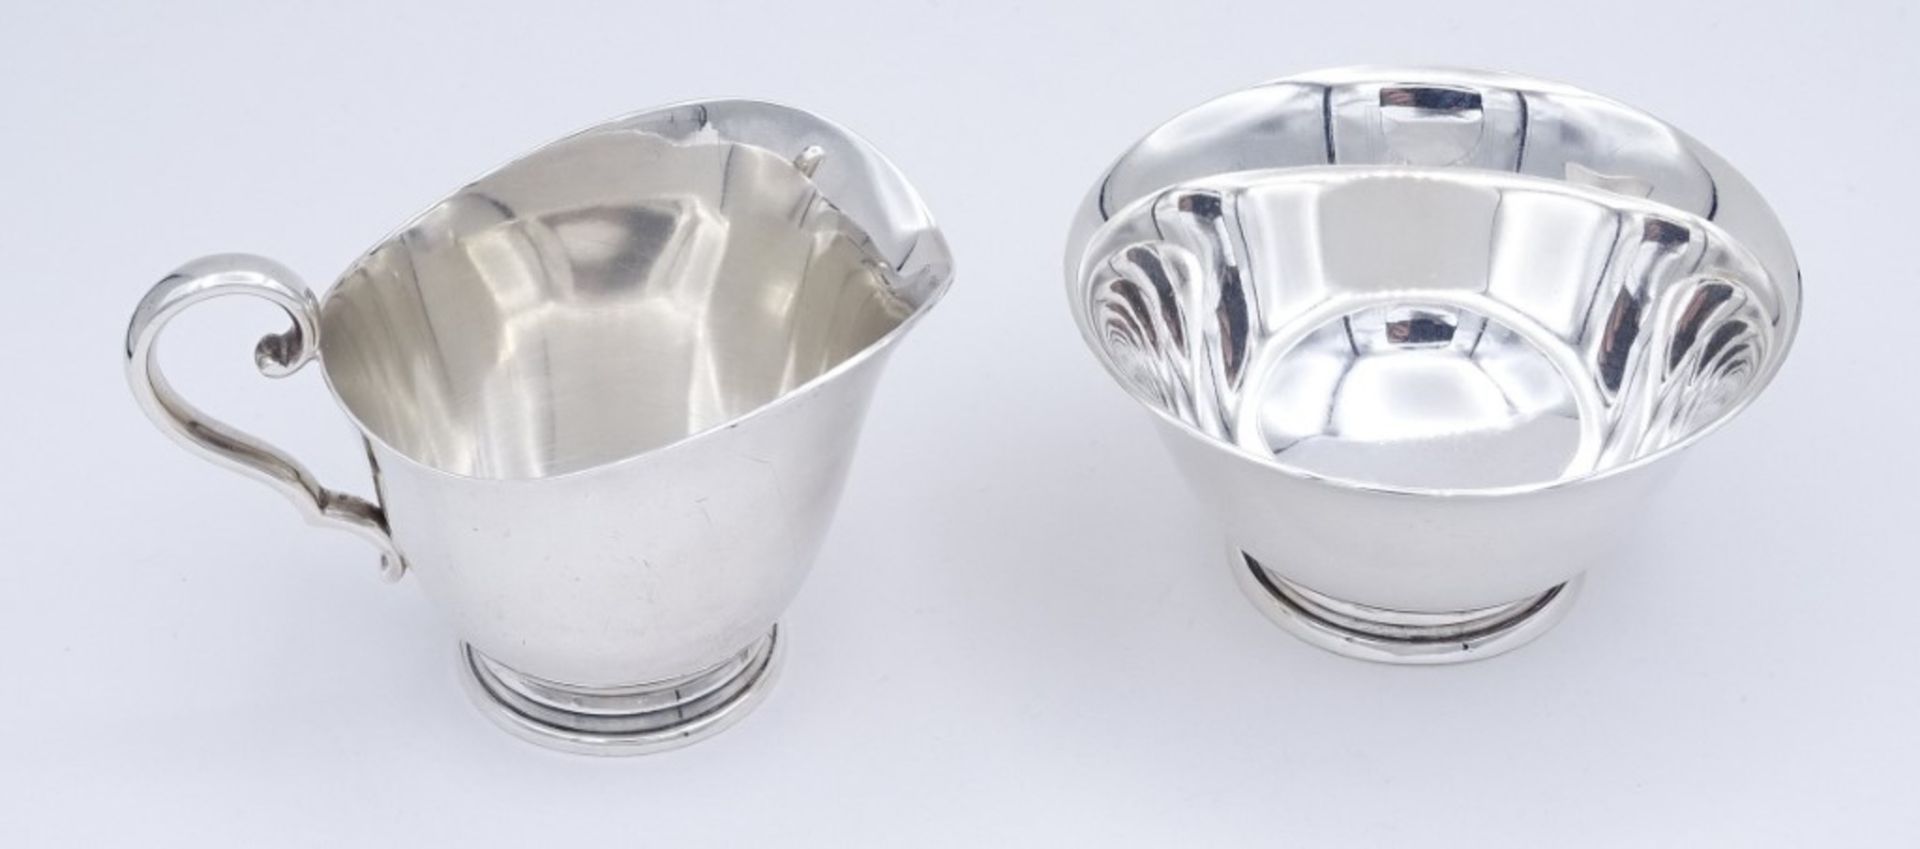 Milch + Zucker,Silber, C.C. Hermann Denmark,Sterling Silber 0.925, H- 4 - 5,5cm, zus.142g. - Image 2 of 6